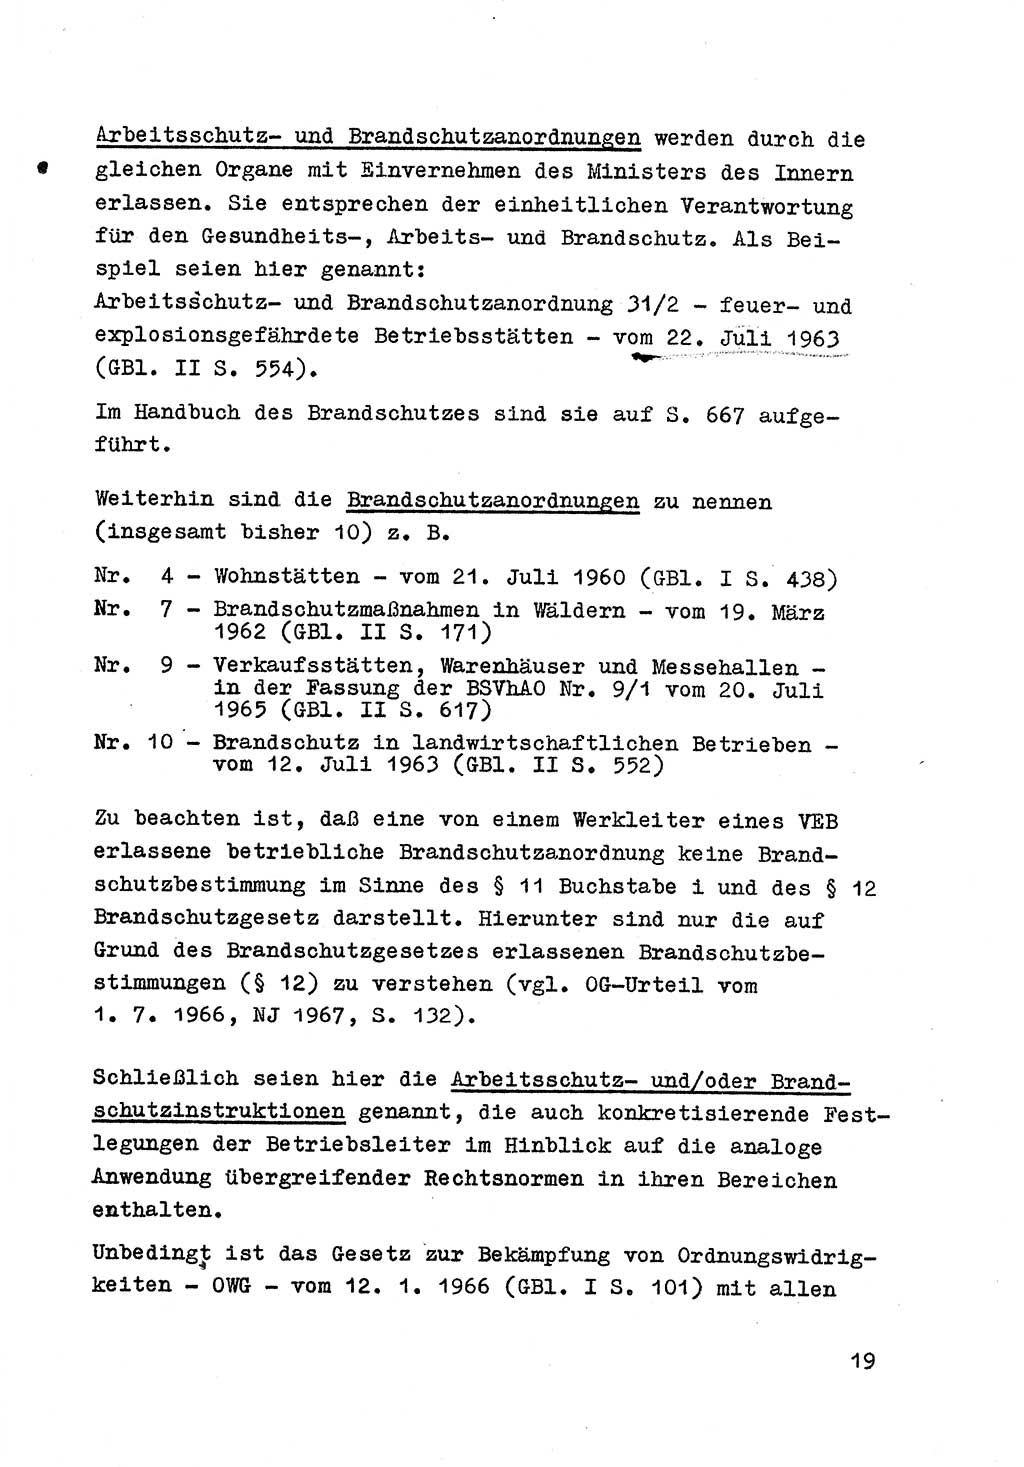 Strafrecht der DDR (Deutsche Demokratische Republik), Besonderer Teil, Lehrmaterial, Heft 7 1970, Seite 19 (Strafr. DDR BT Lehrmat. H. 7 1970, S. 19)